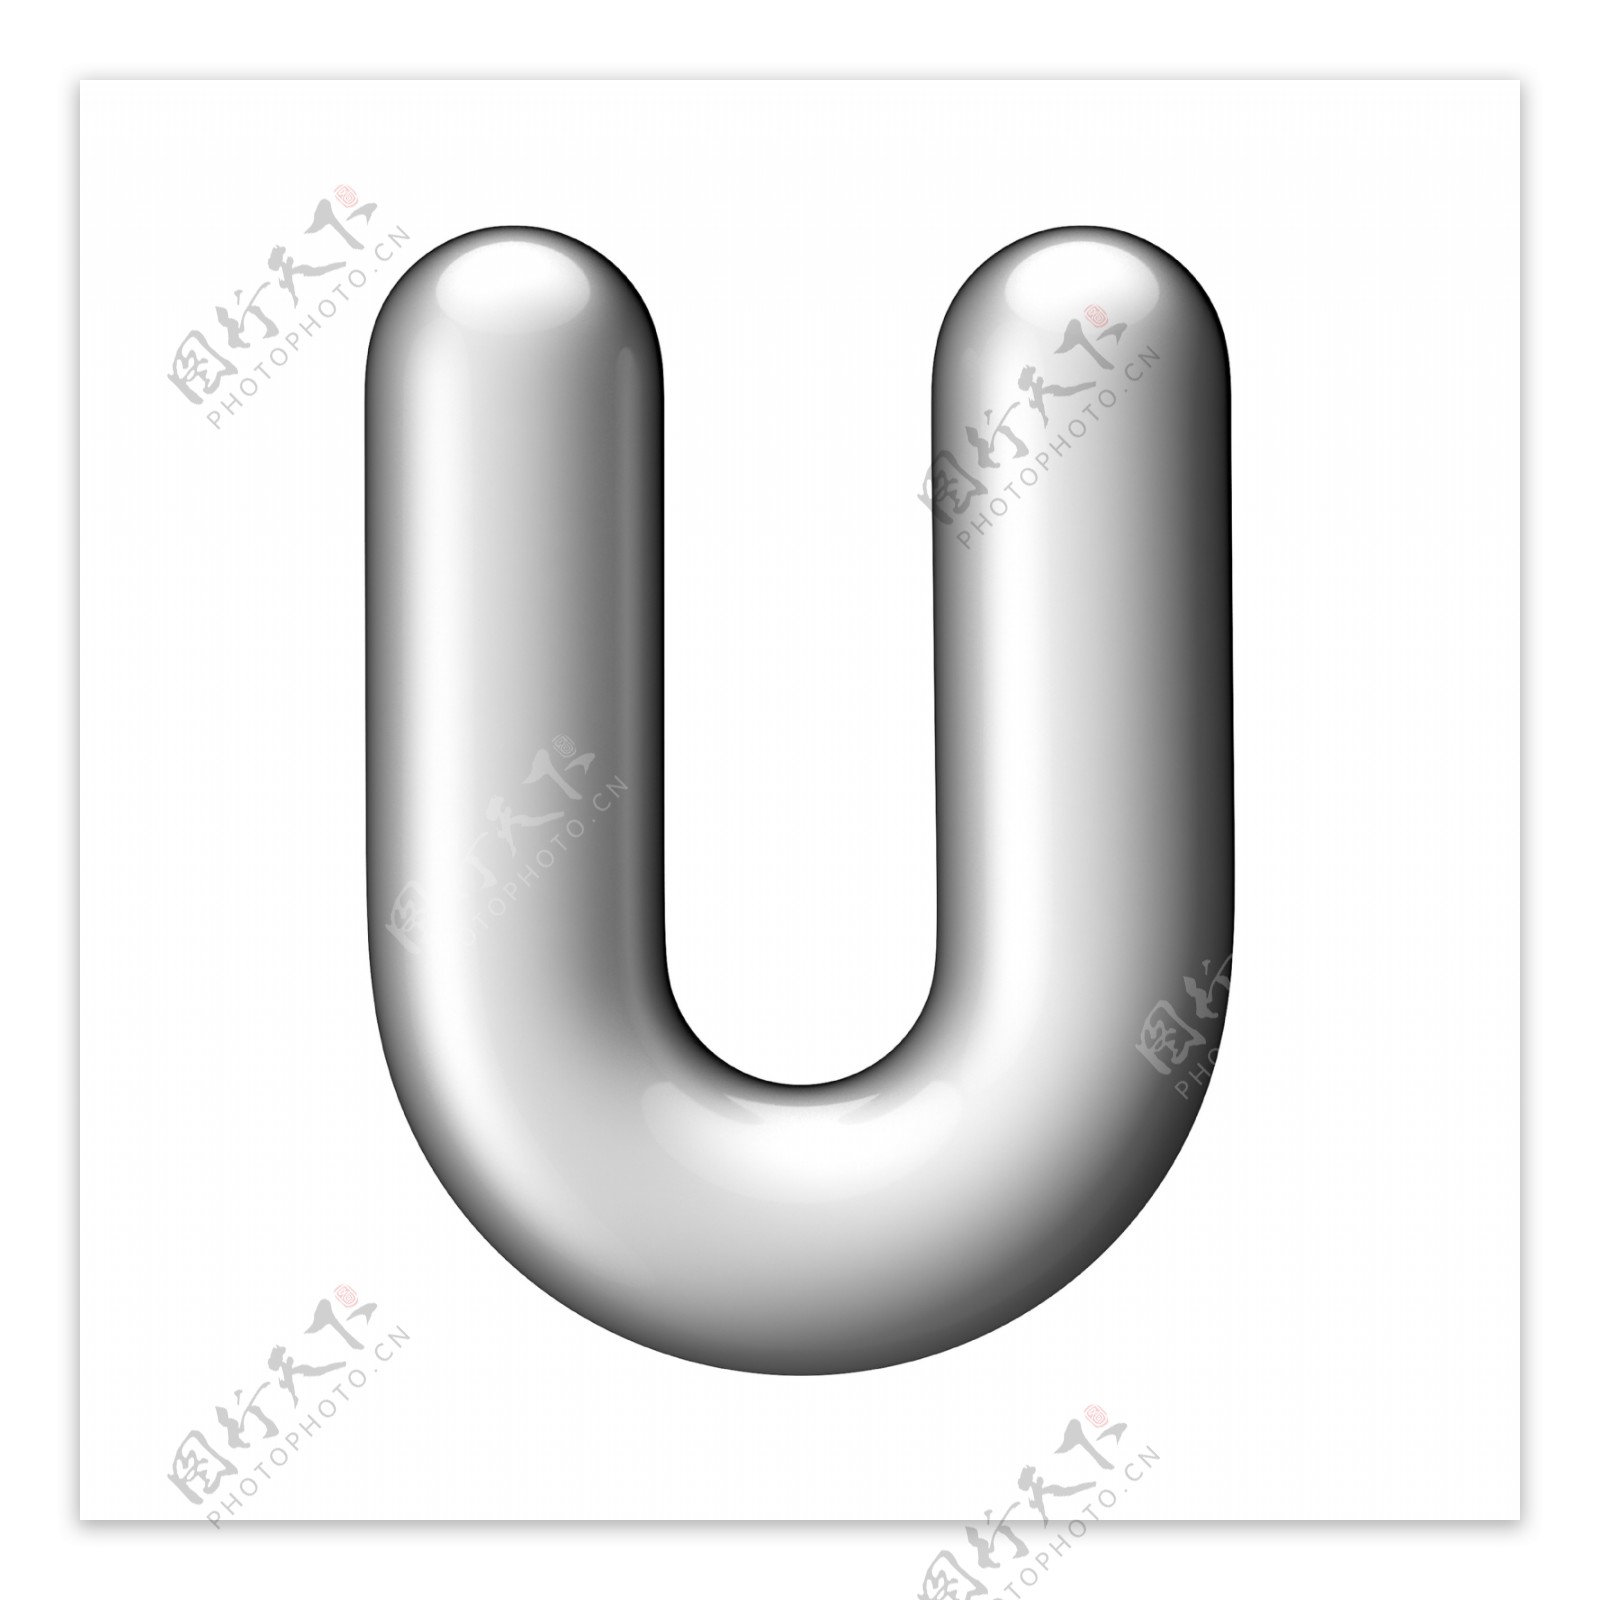 金属字母U